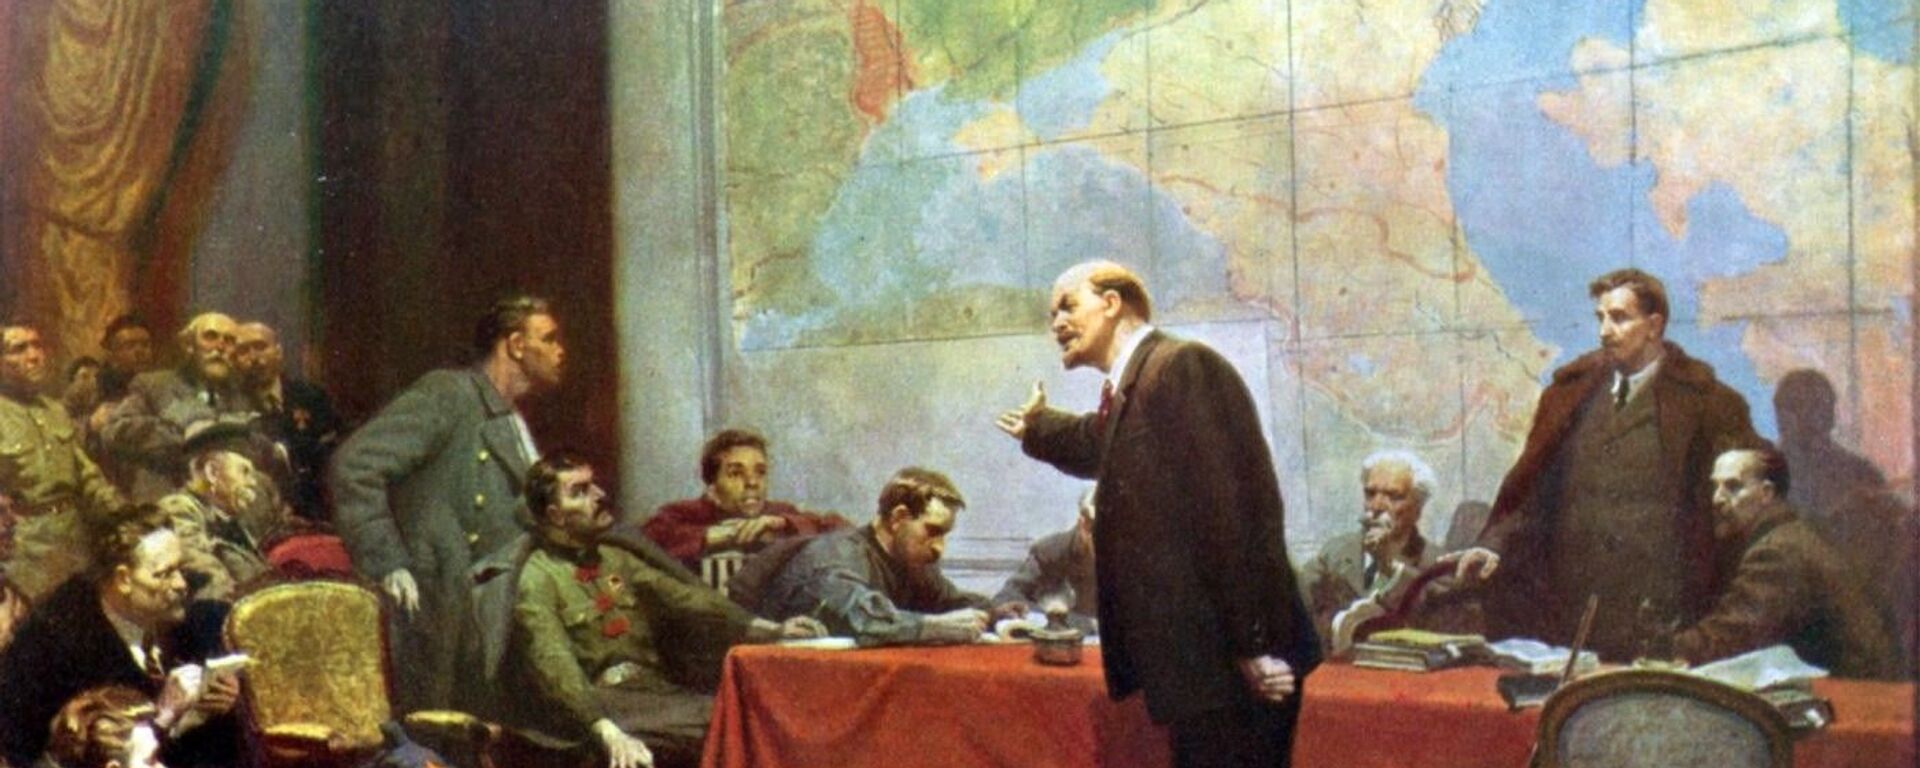 Vladímir Lenin presenta el plan de electrificación de Rusia GOELRÓ (Leonid Shmatko, 1957) - Sputnik Mundo, 1920, 08.11.2021